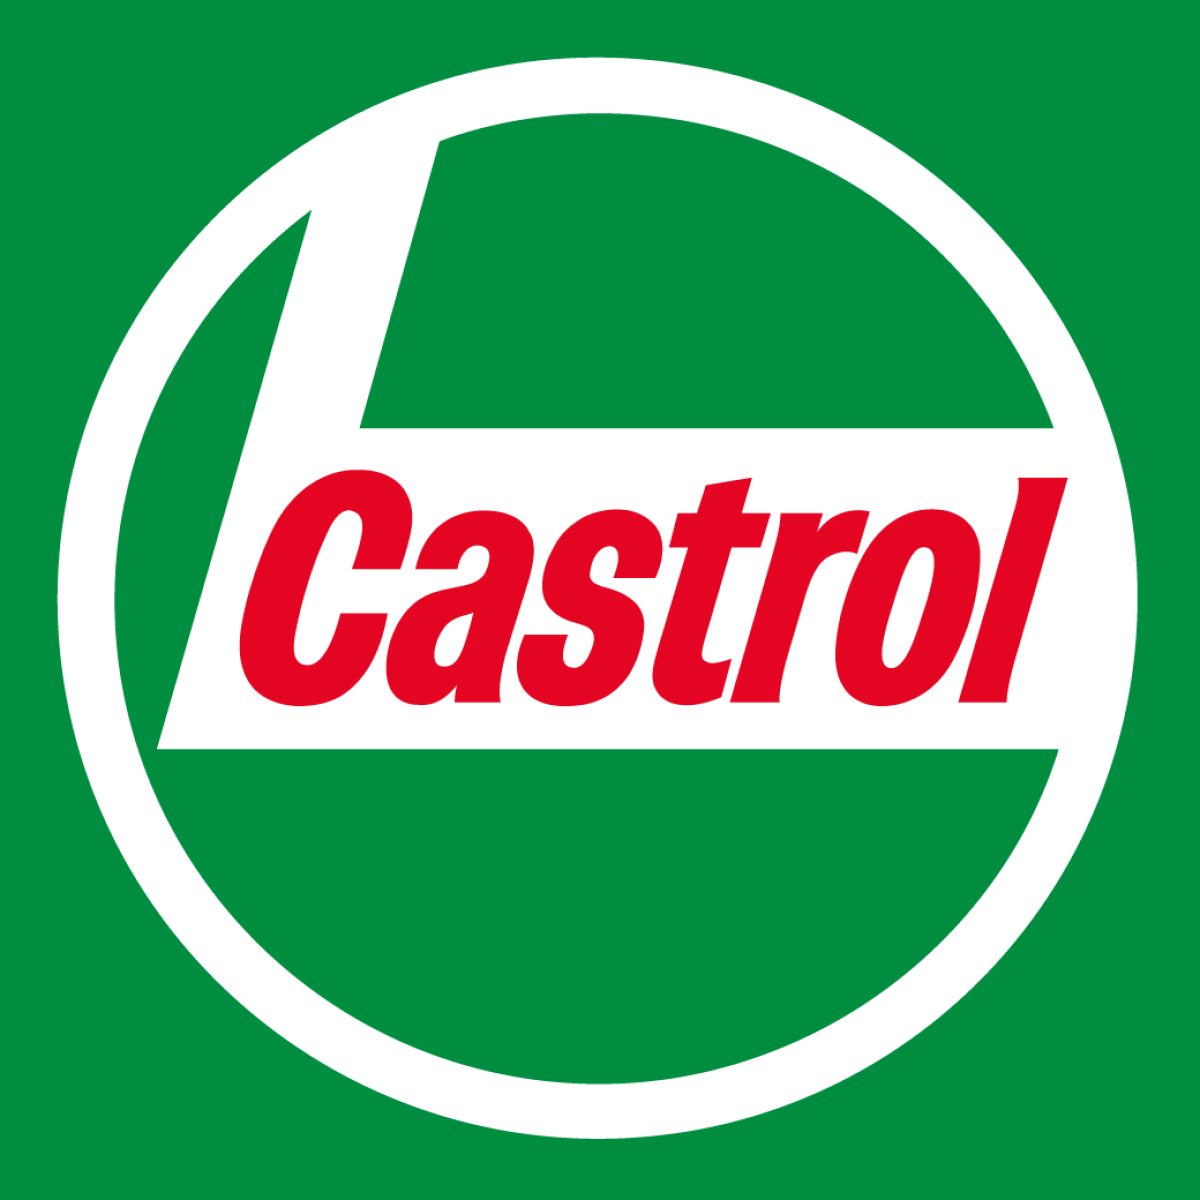 Castrol Oil Motor Vinyl Banner Sign Garage WorkShop Many Size Logo Dealer 